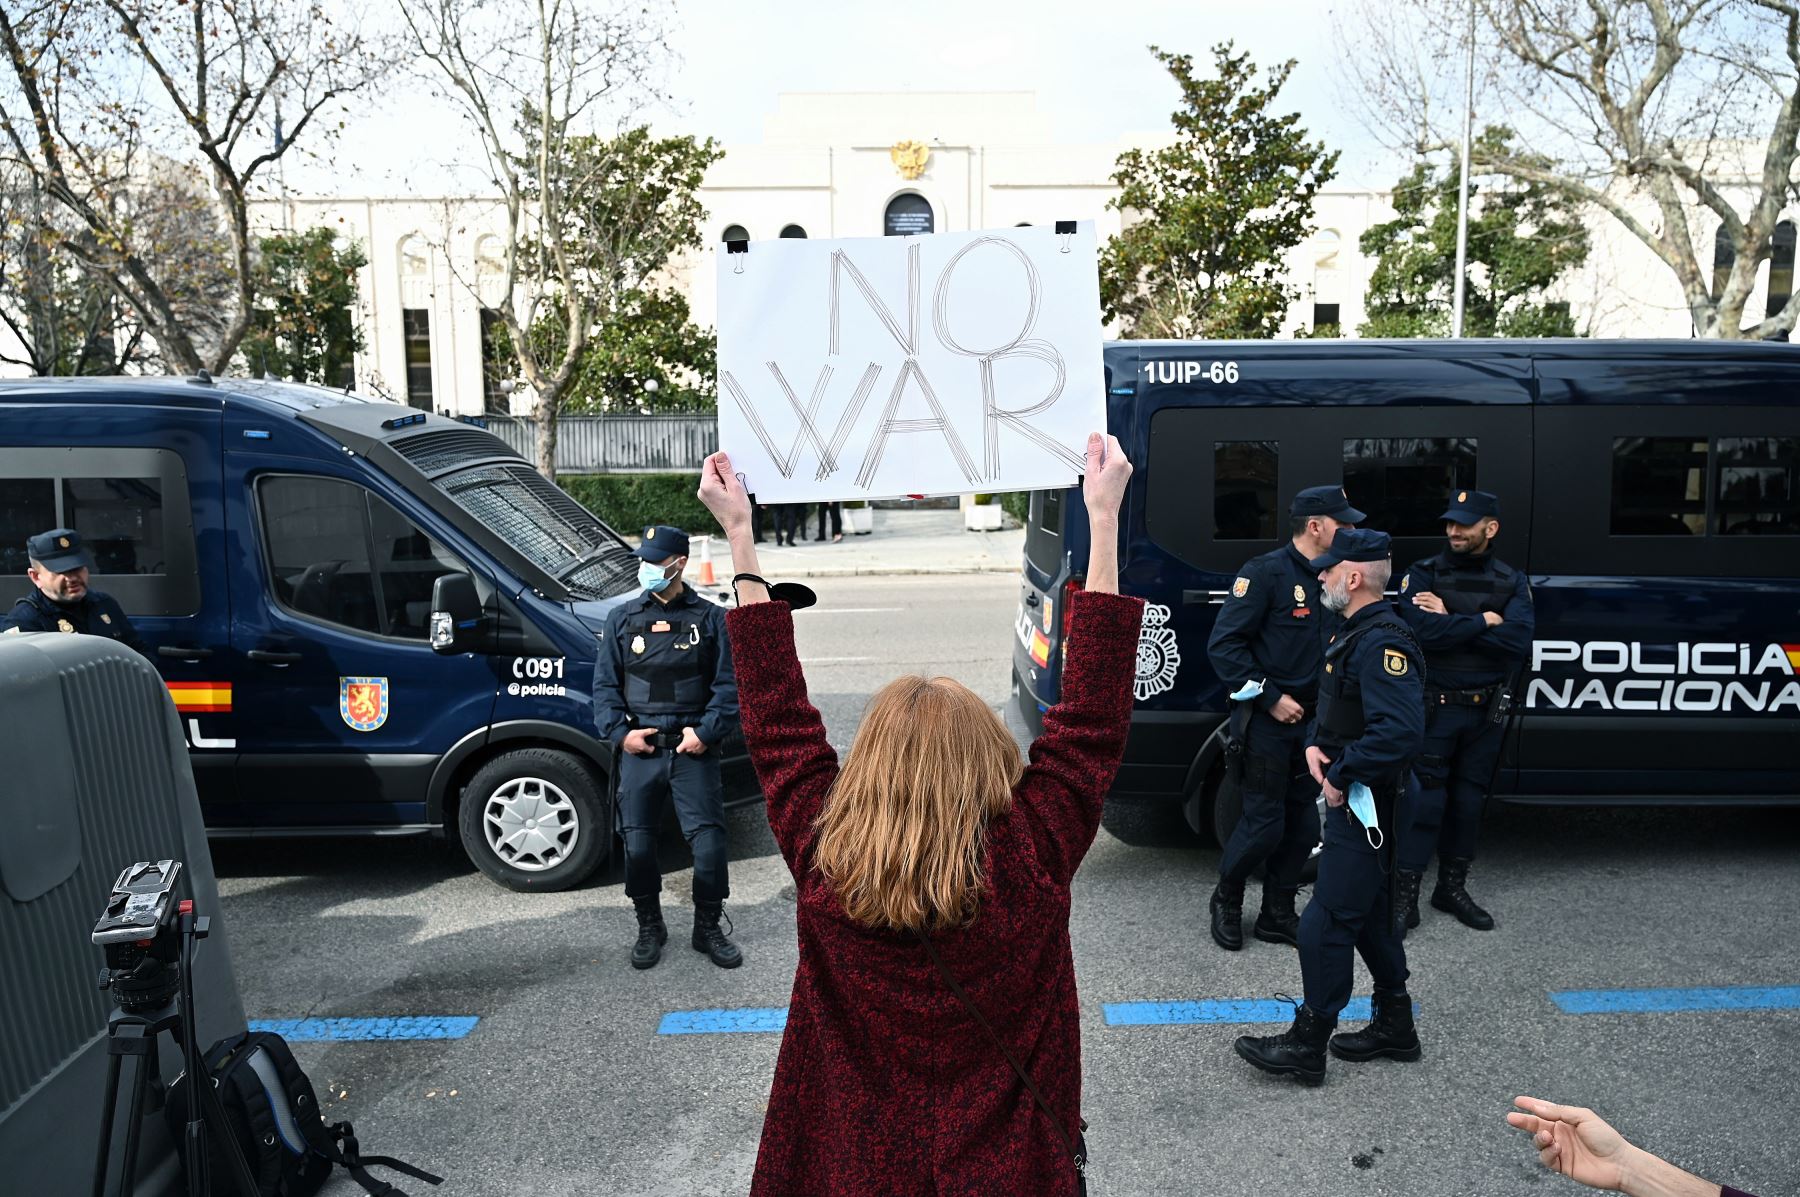 Protesta llevada a cabo este jueves a las puertas de la embajada de Rusia en España, sita en Madrid, tras el comienzo de la operación militar rusa en Ucrania. Foto: Efe.